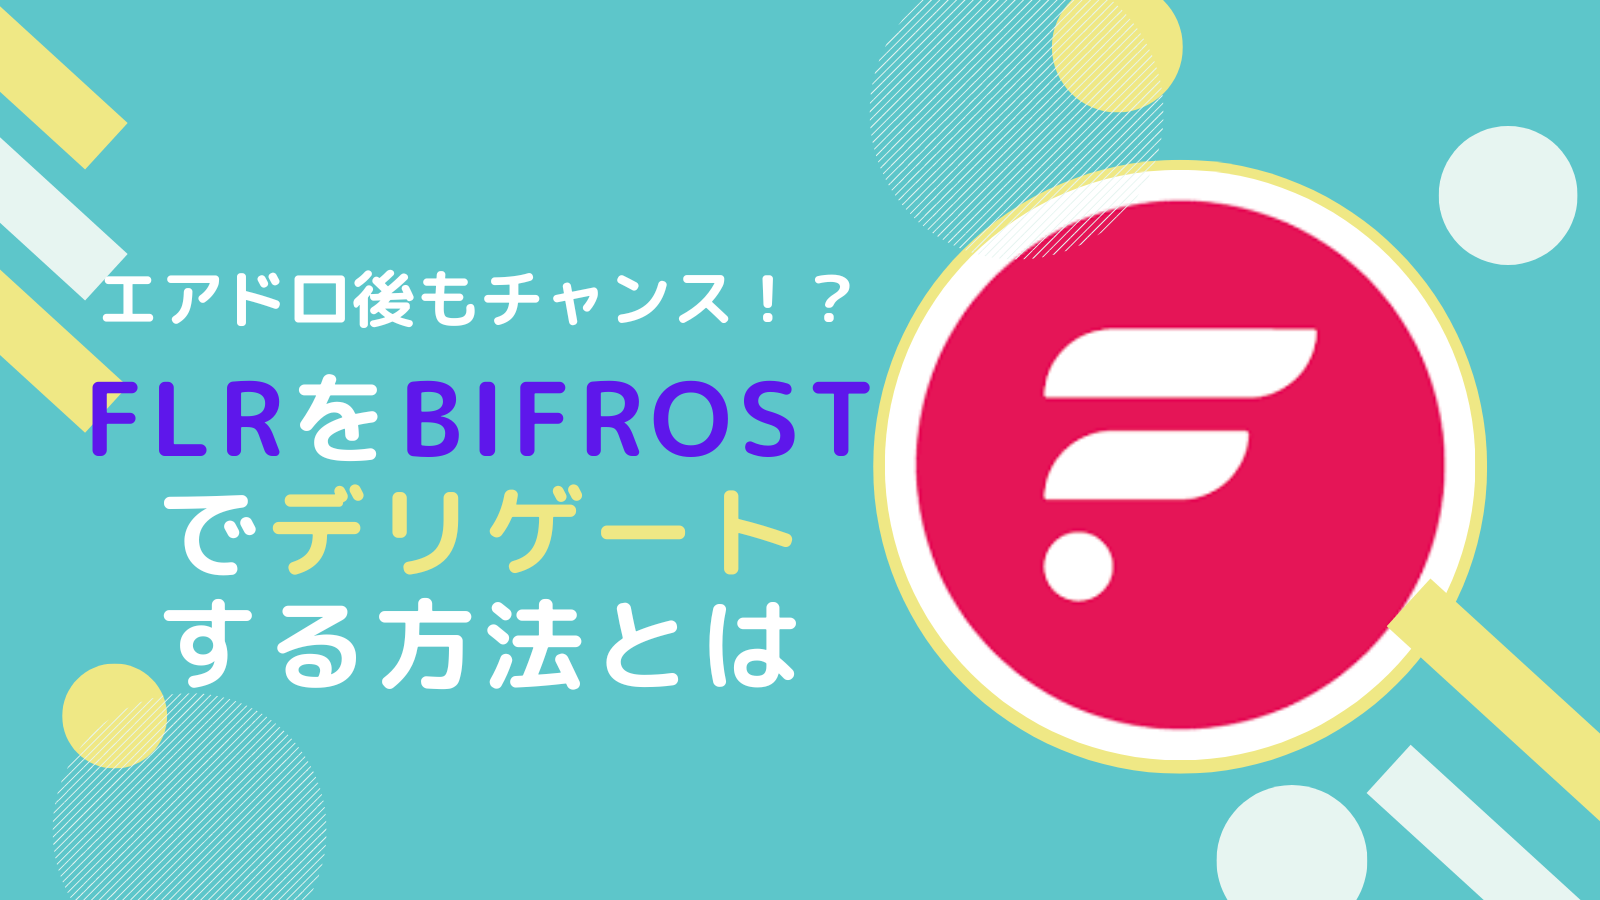 FLR(フレア)をBifrostへ送金しデリゲートする方法とは